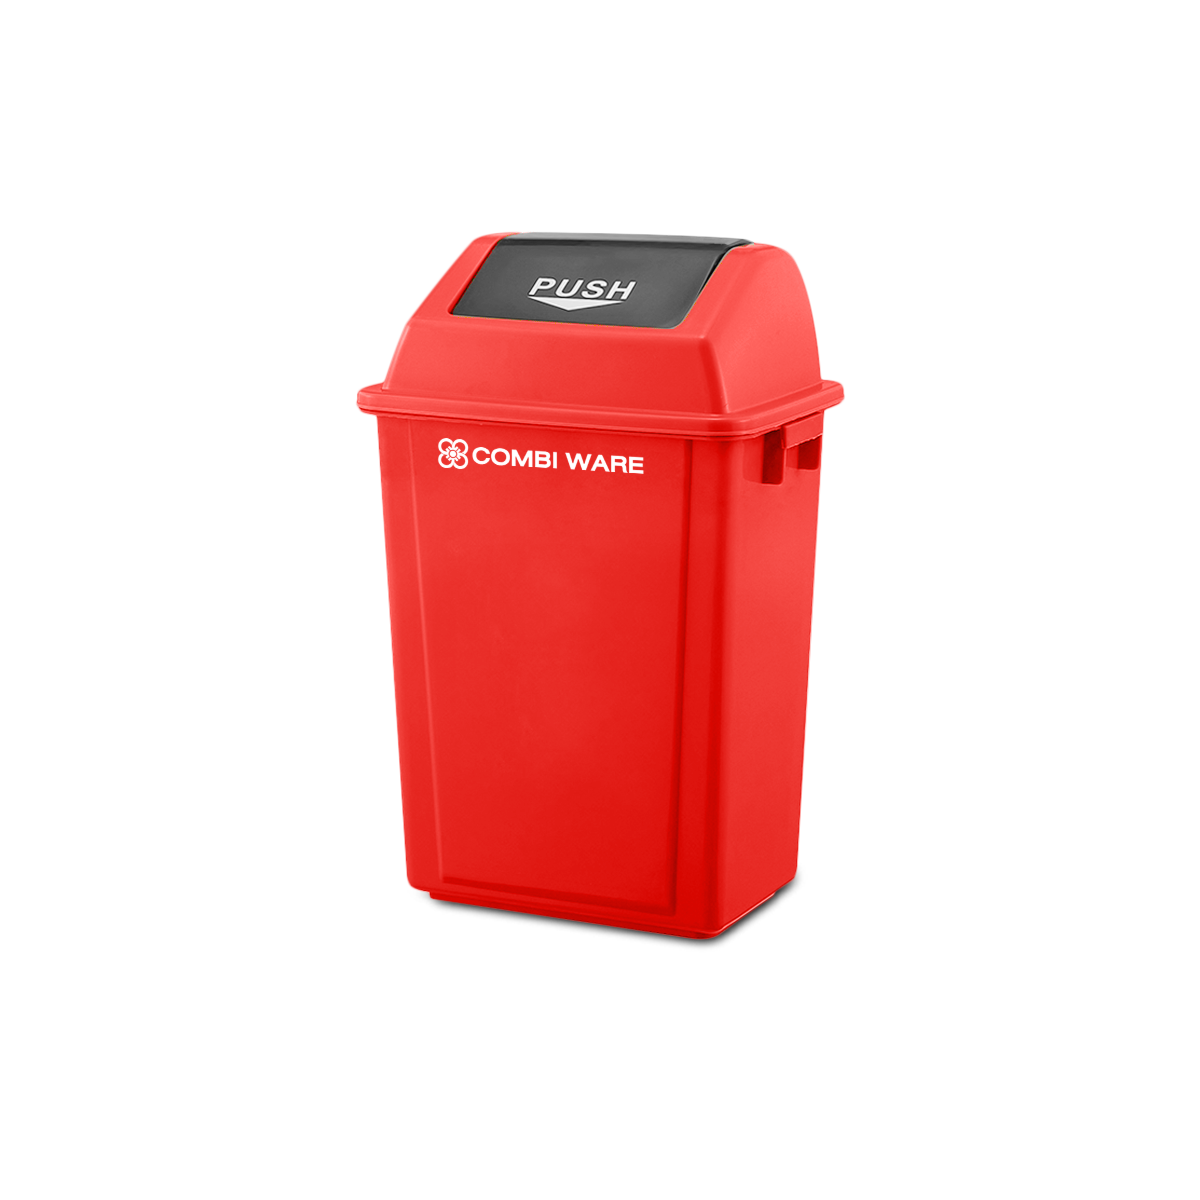 ถังขยะพลาสติก ขนาด 40 ลิตร แบบฝาผลัก สีแดง